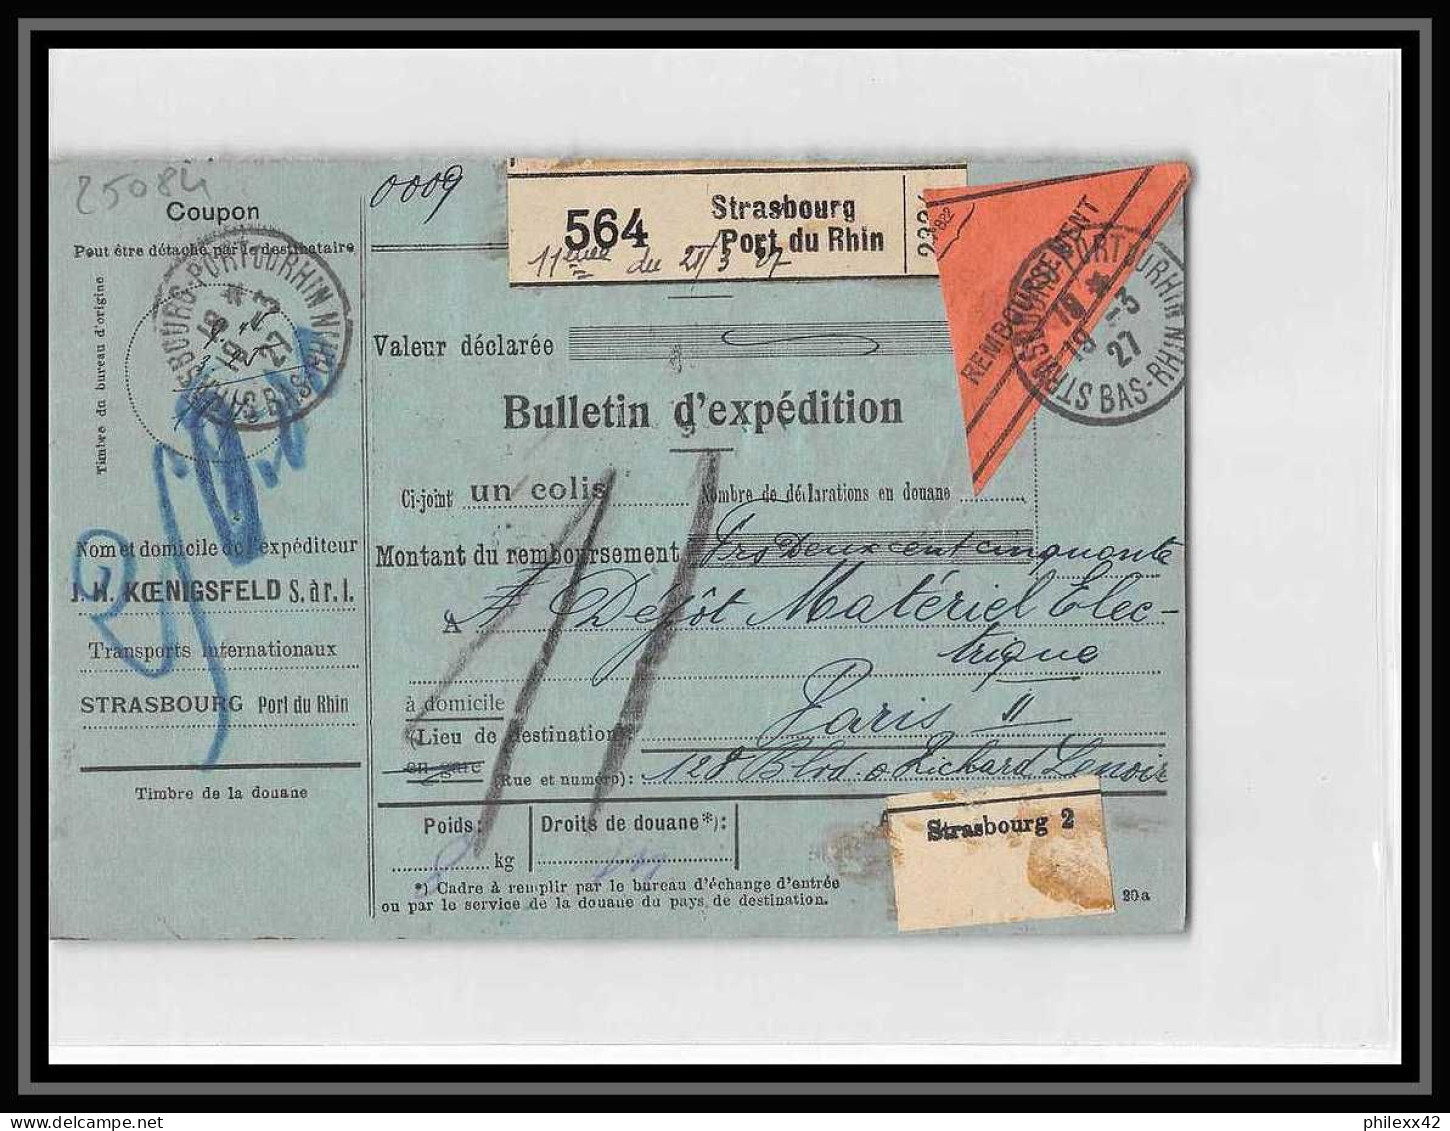 25084 Bulletin D'expédition France Colis Postaux Fiscal Haut Rhin Strasbourg 1927 Merson 145 Contre Remboursement - Cartas & Documentos